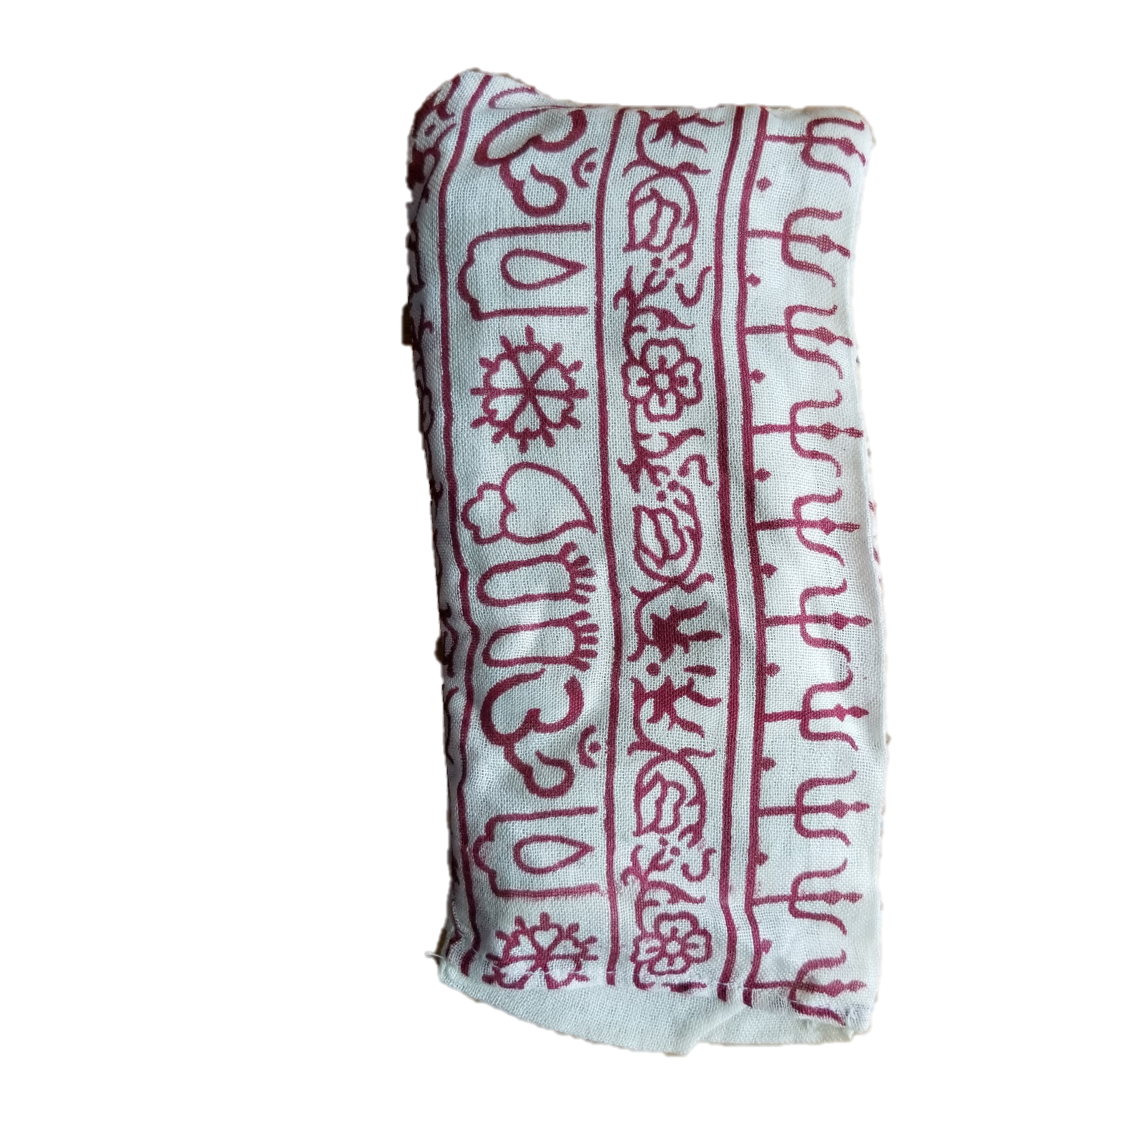 OMSutra Eye Pillow - OM Design